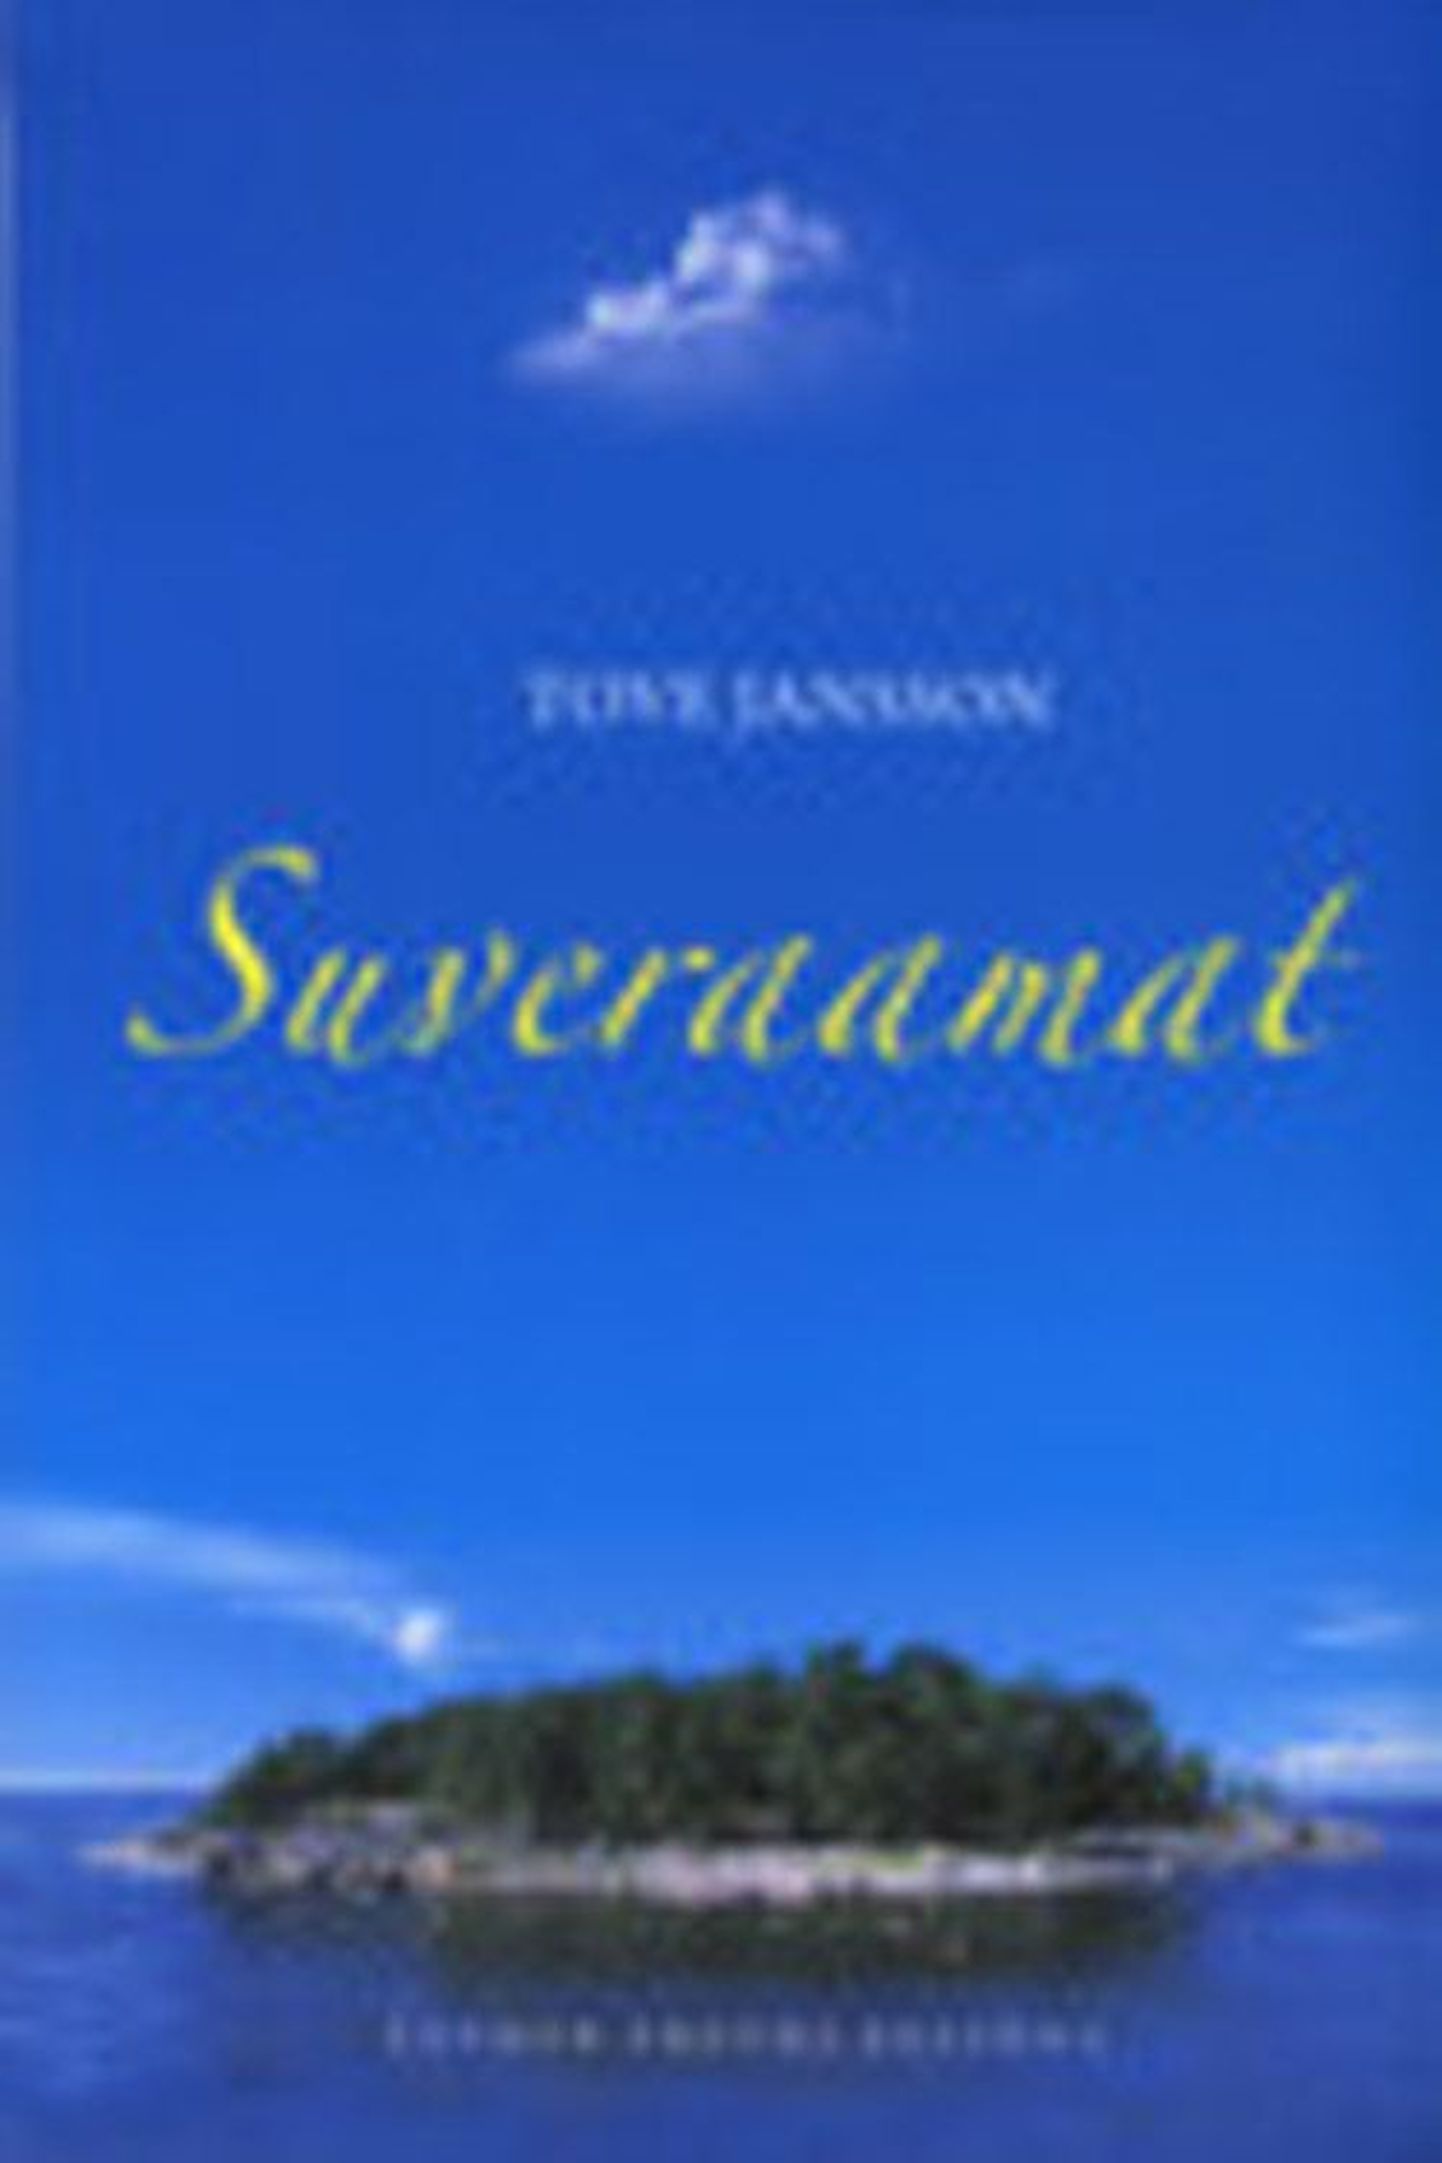 Raamat
Tove Jansson «Suveraamat»
Rootsi keelest ­tõlkinud Maarja Aaloe-Laur
Eesti Päevaleht, 2010